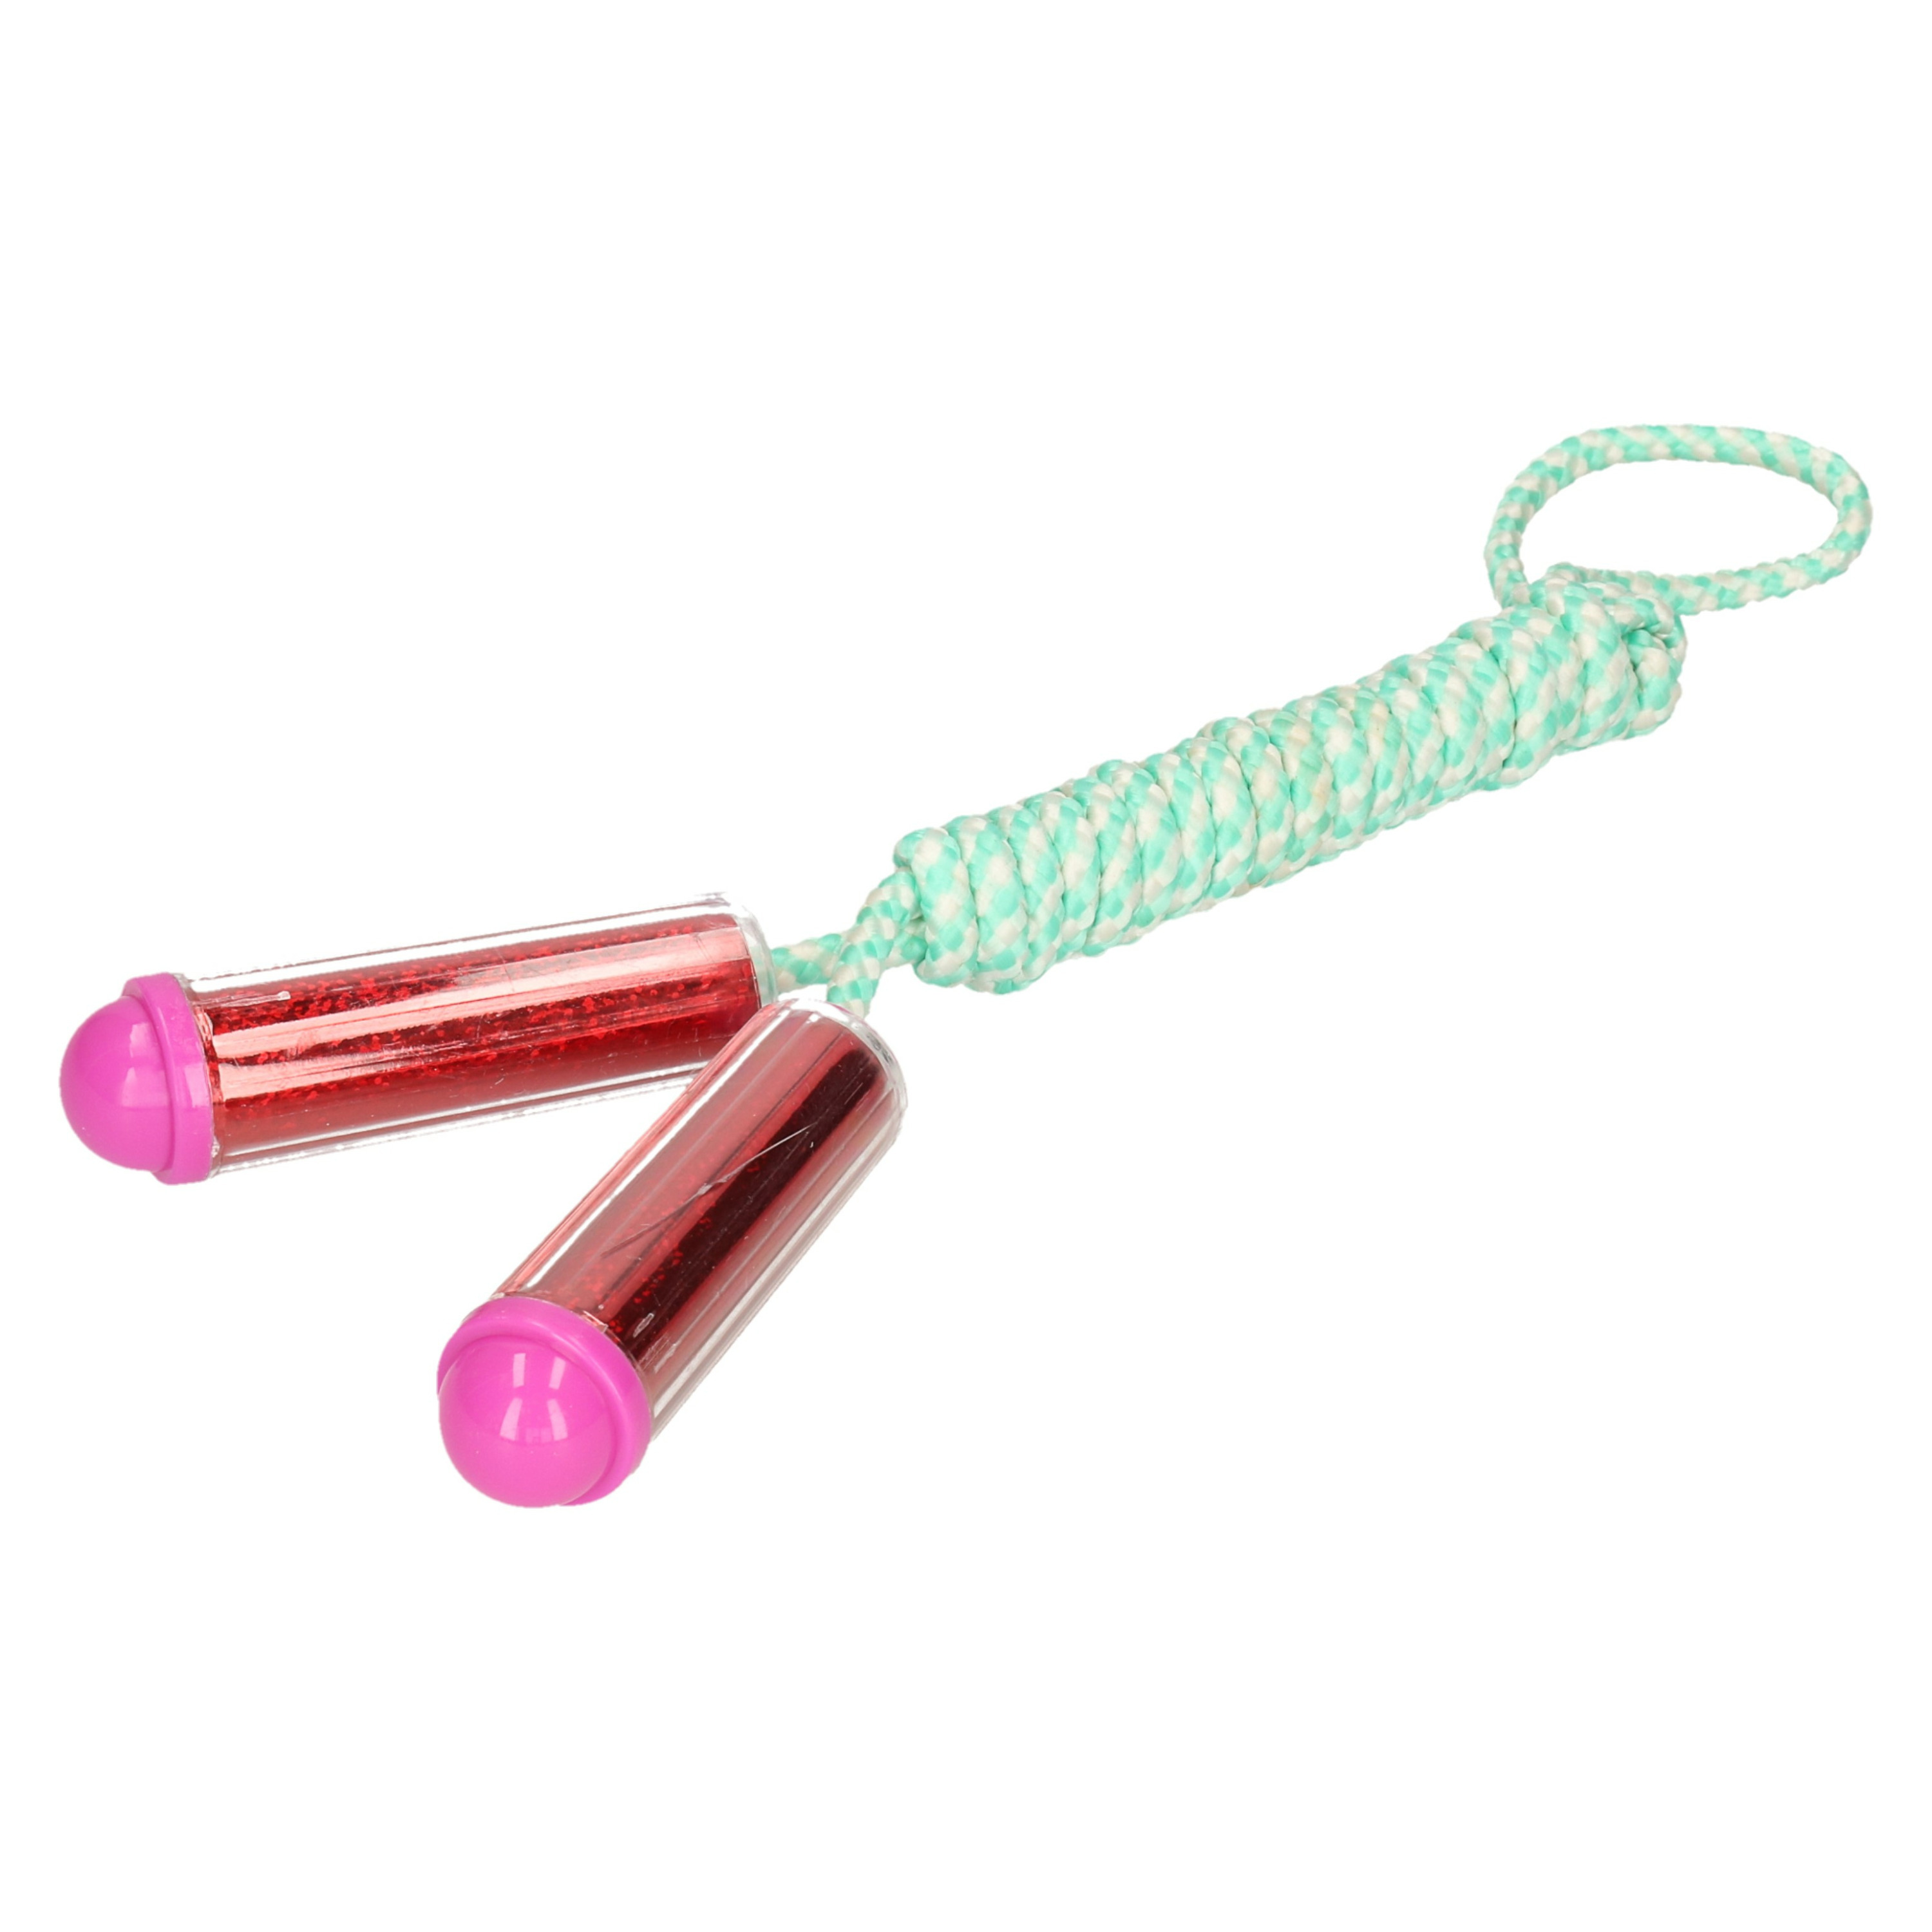 Springtouw - met kunststof handvatten - mintgroen/rood - 210 cm - speelgoed